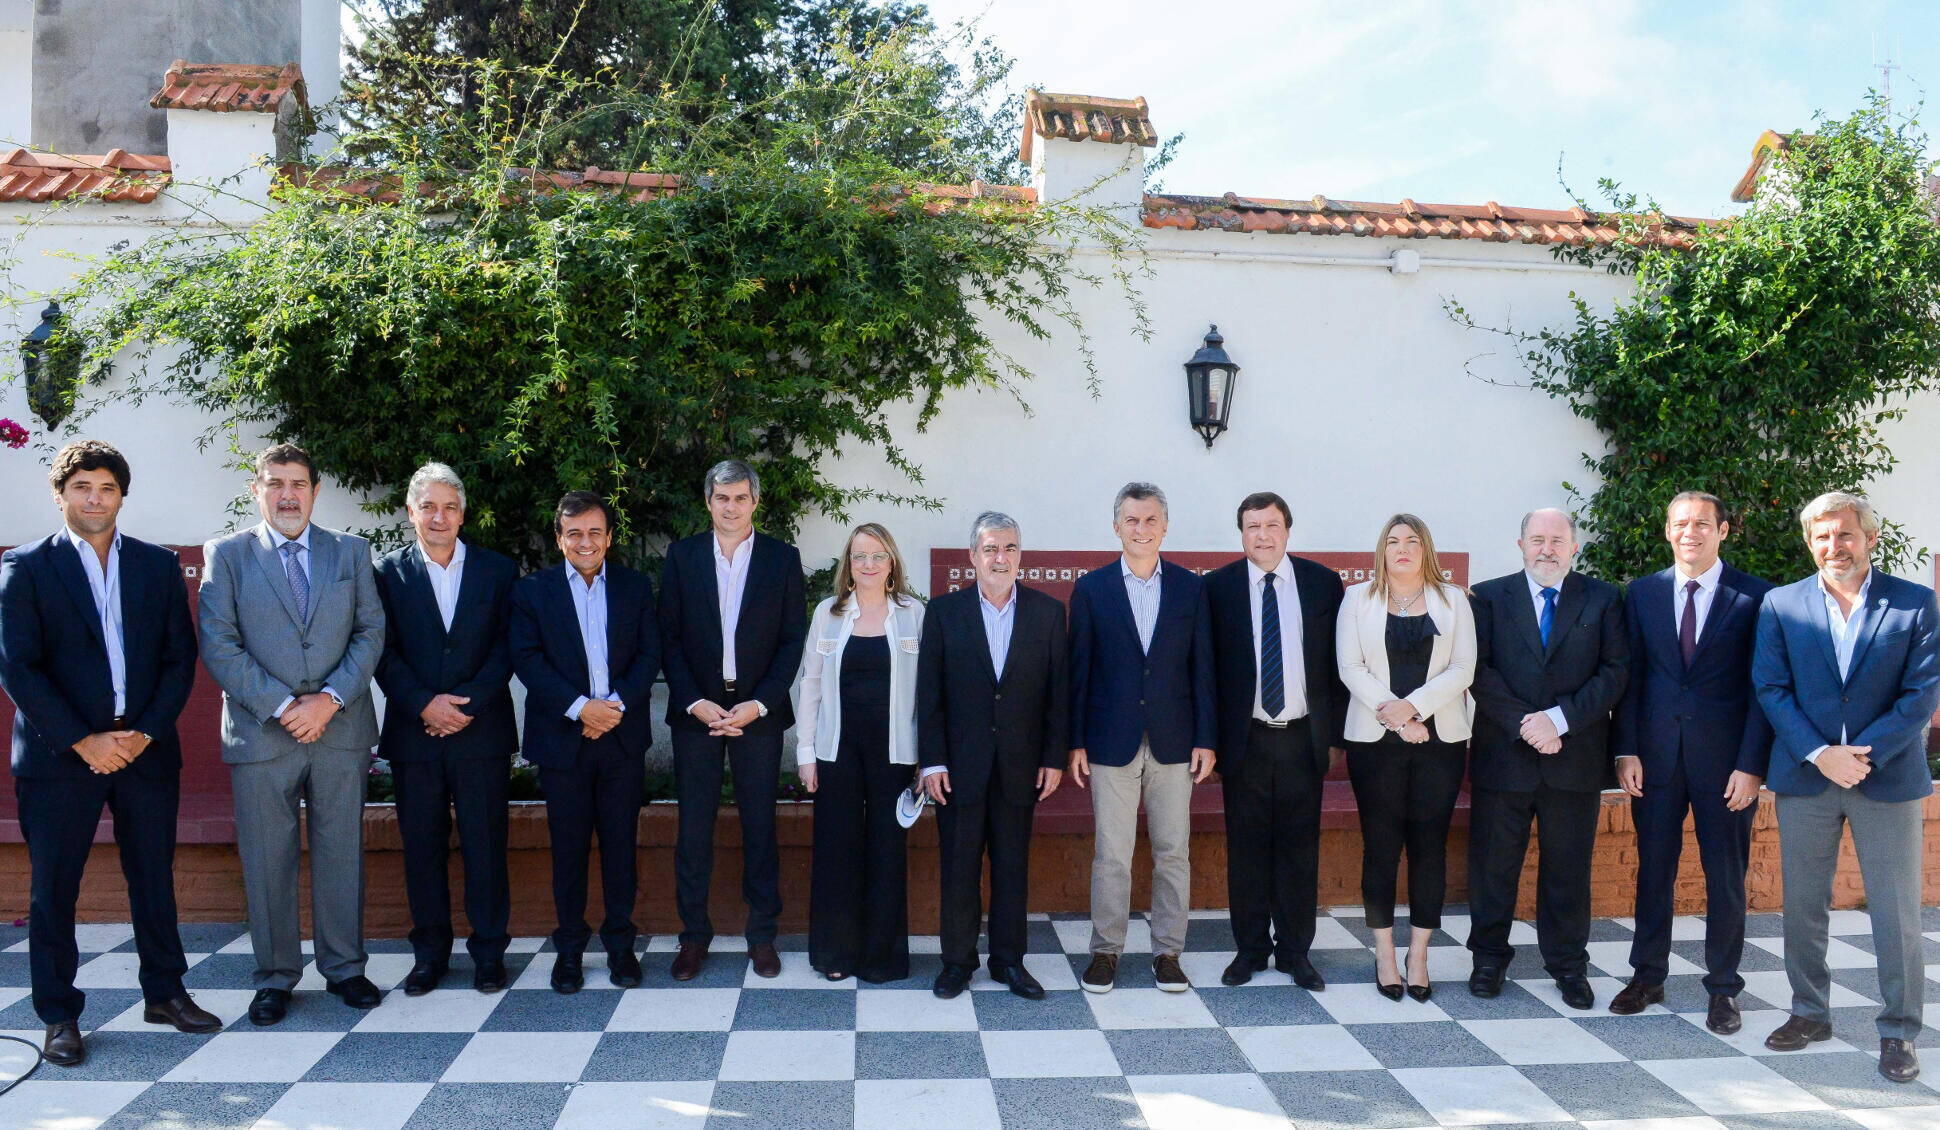 El presidente Mauricio Macri analizó el Proyecto Patagonia junto a gobernadores de esa región